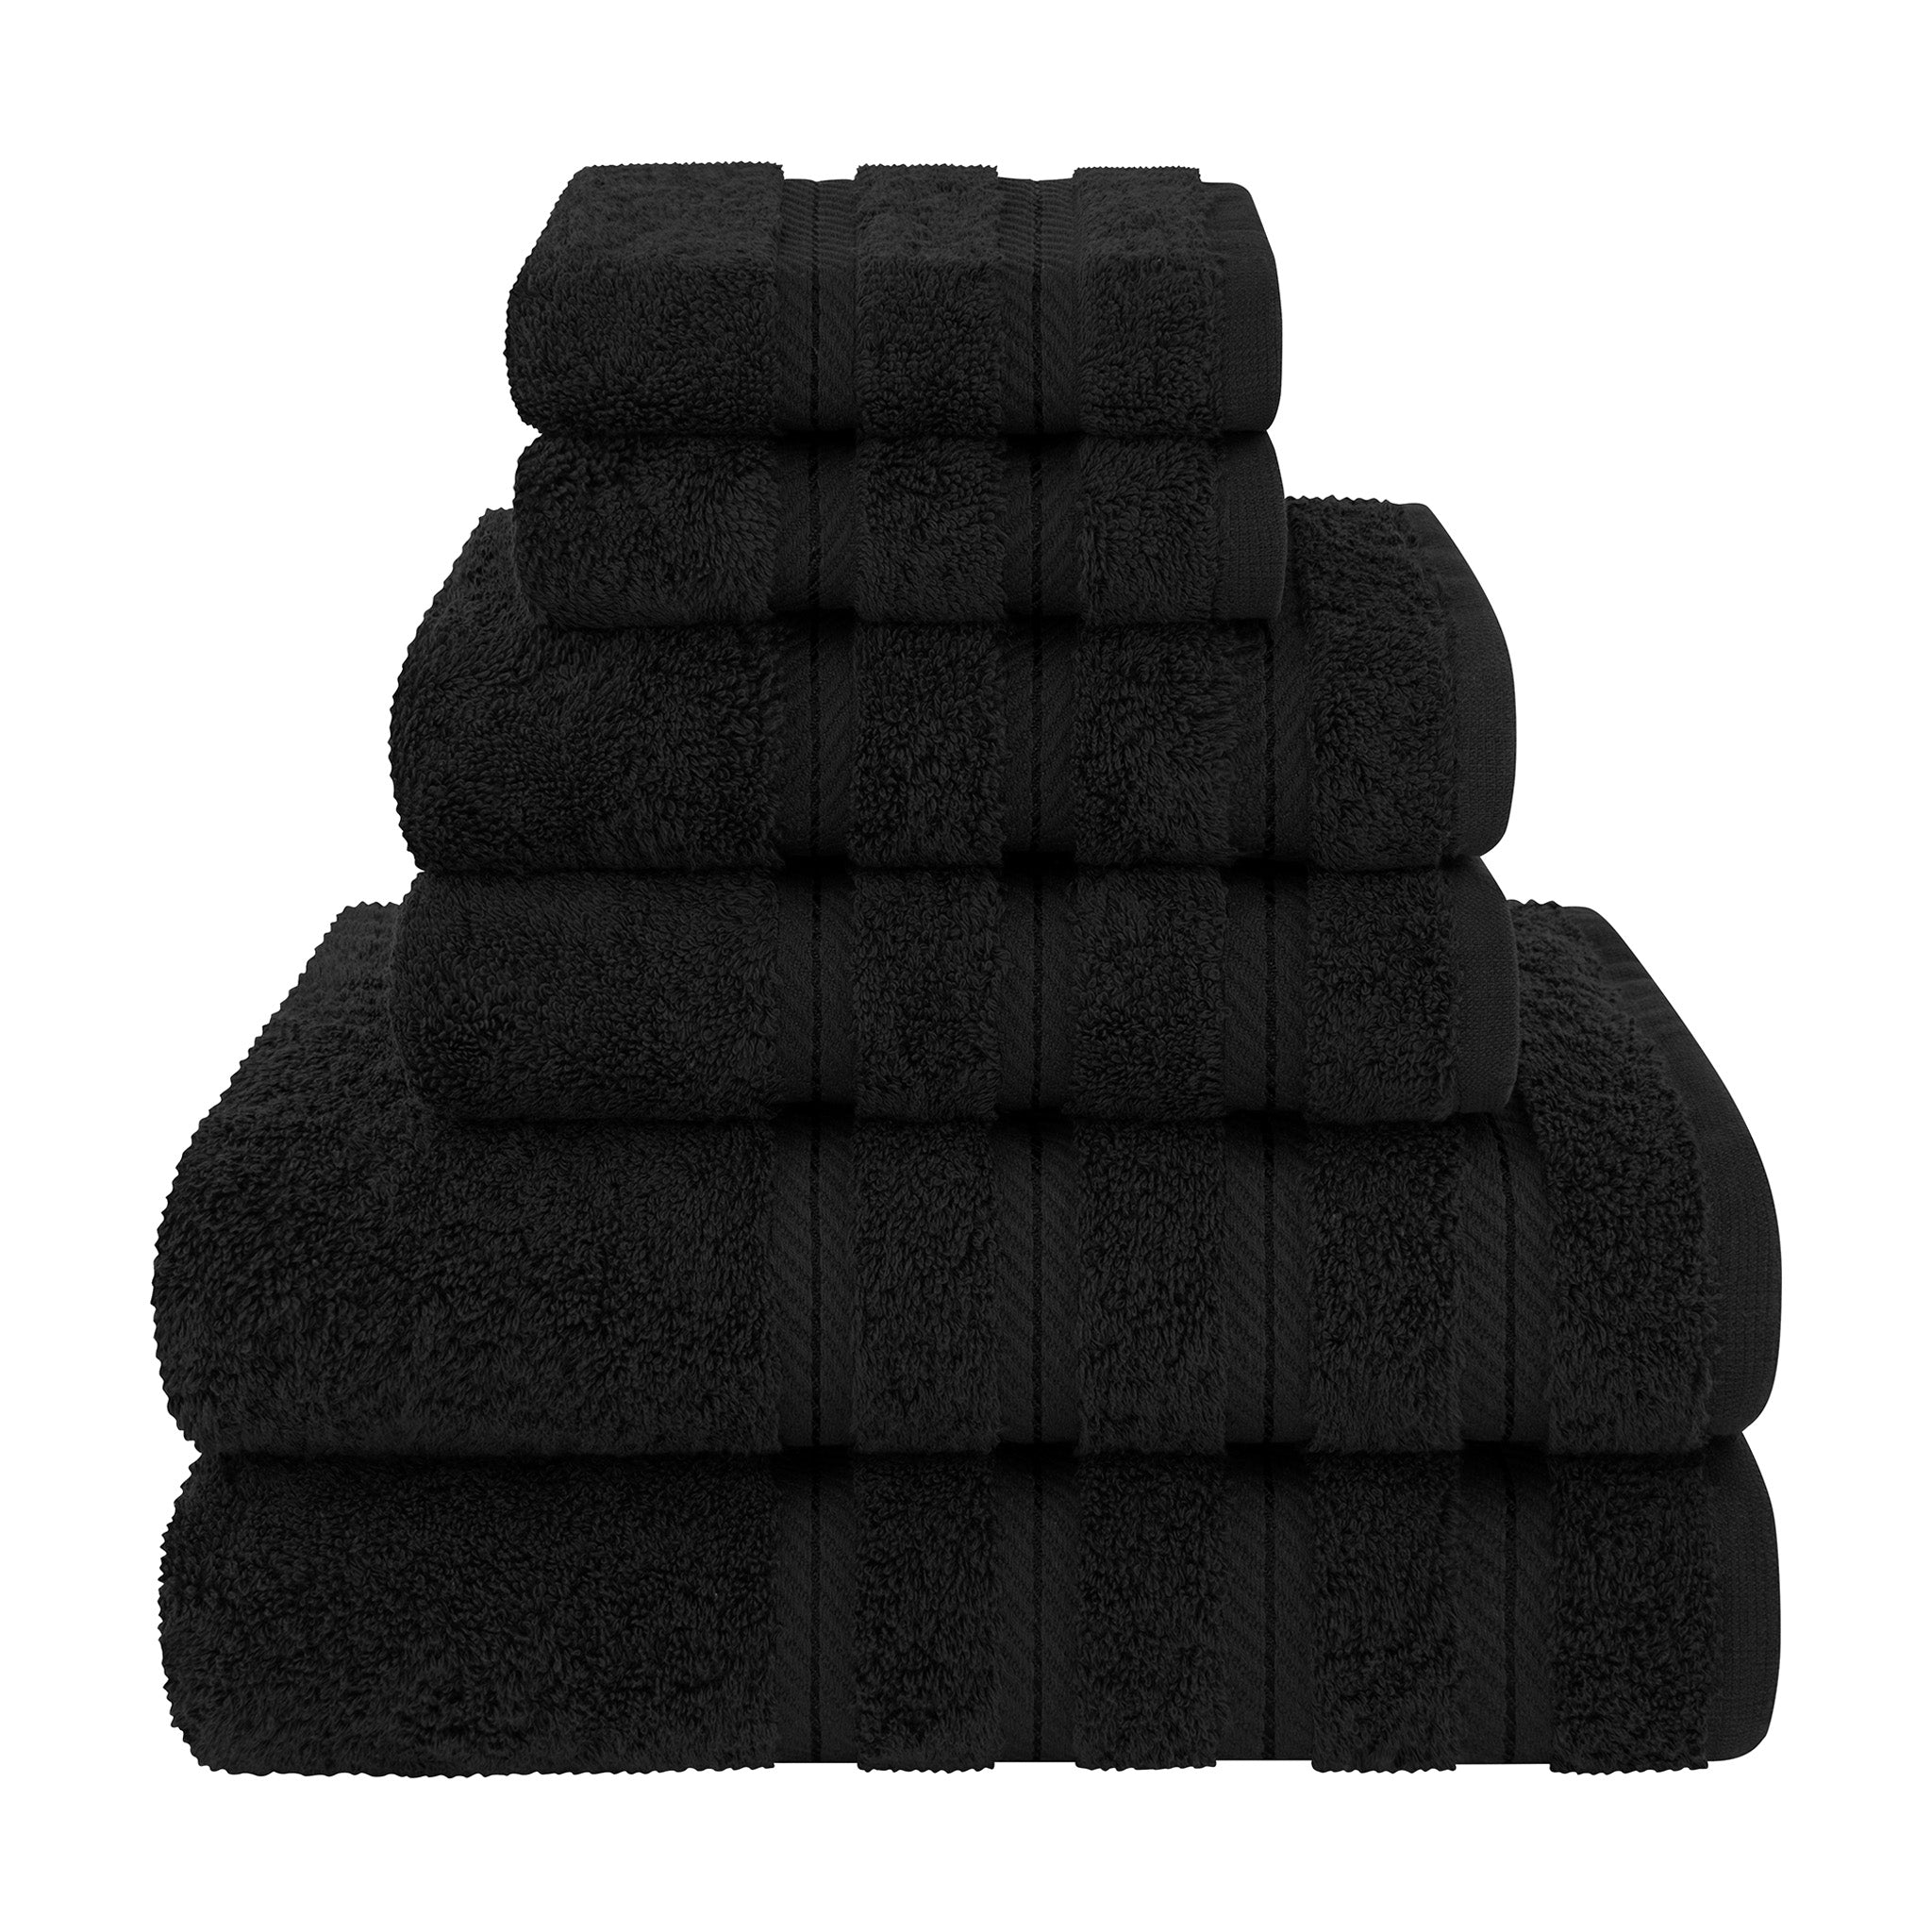 American Soft Linen 100% Turkish Cotton 6 Piece Towel Set Wholesale black-1